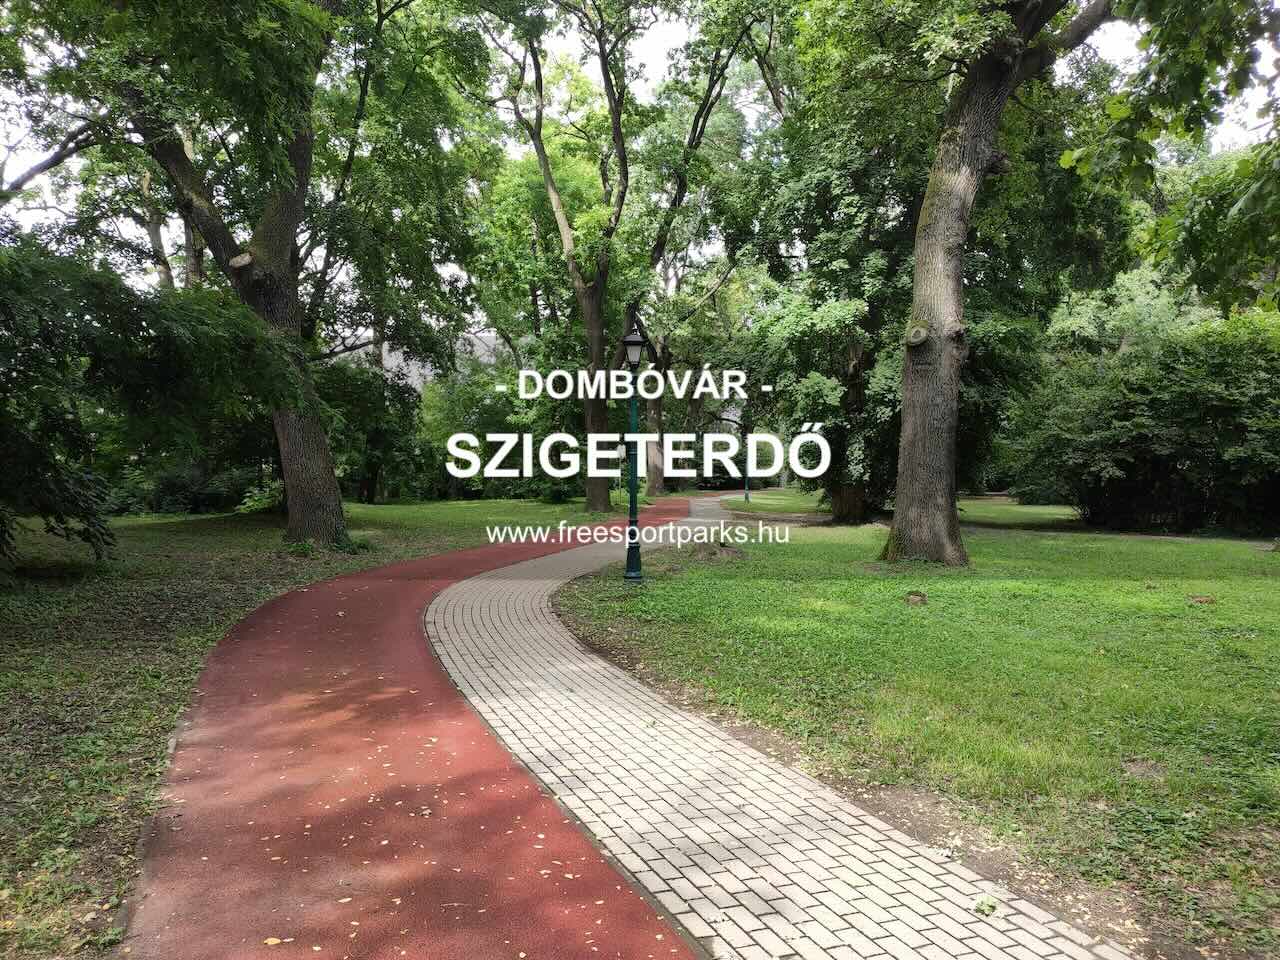 Dombóvár Szigeterdő - Free Sport Parks Blog